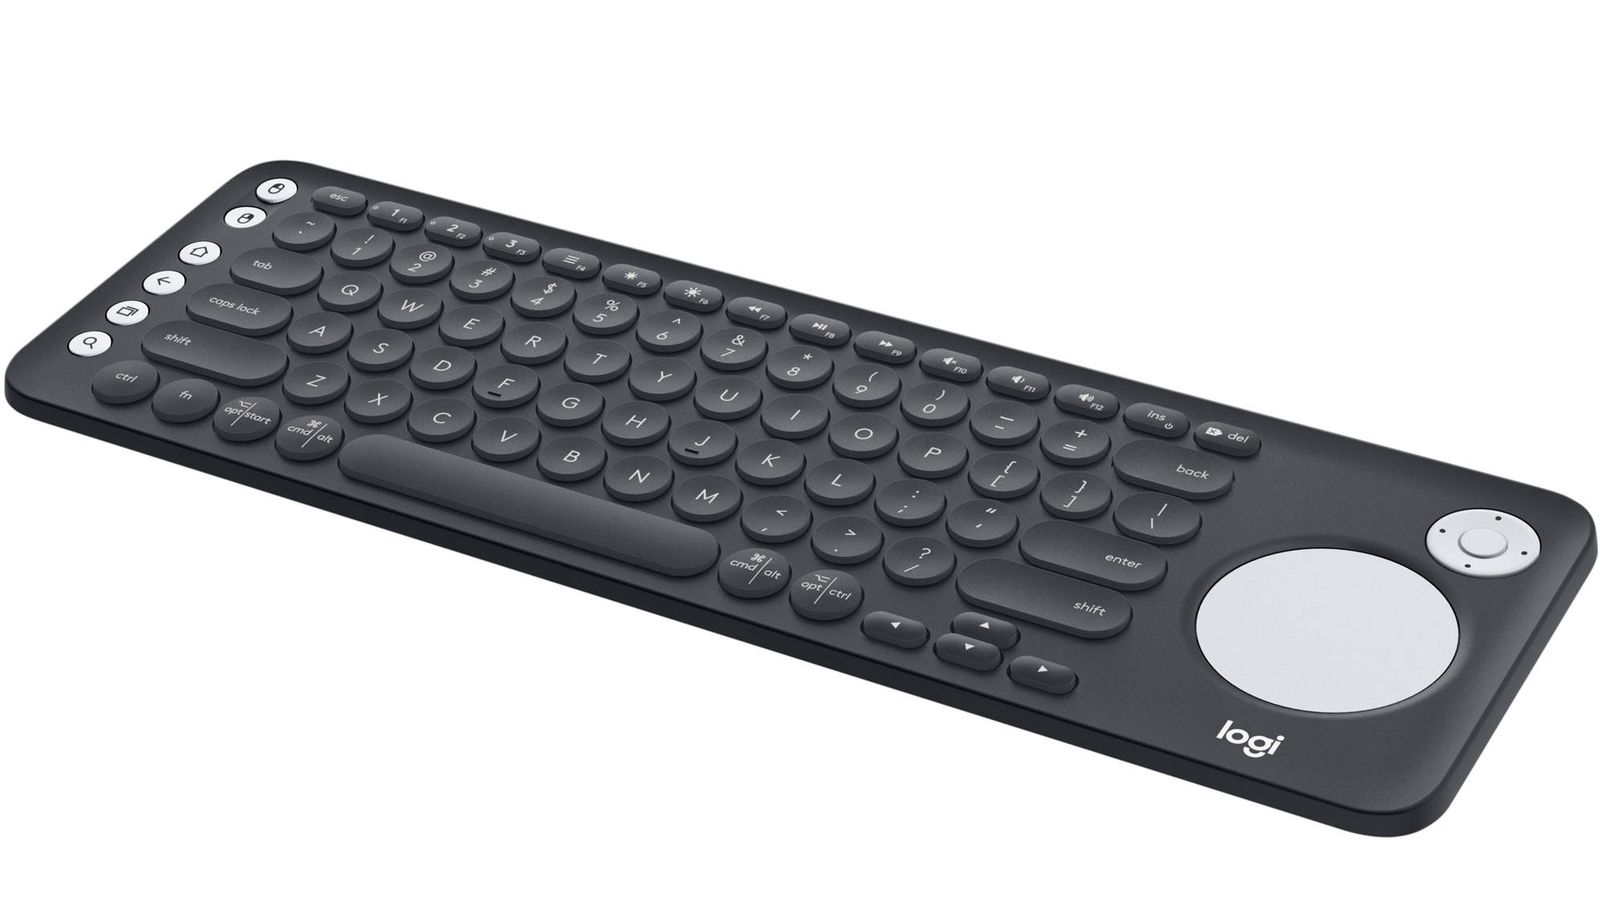 tonto orificio de soplado descuento El teclado Logitech K600 TV simplifica la navegación y control de las Smart  TVs